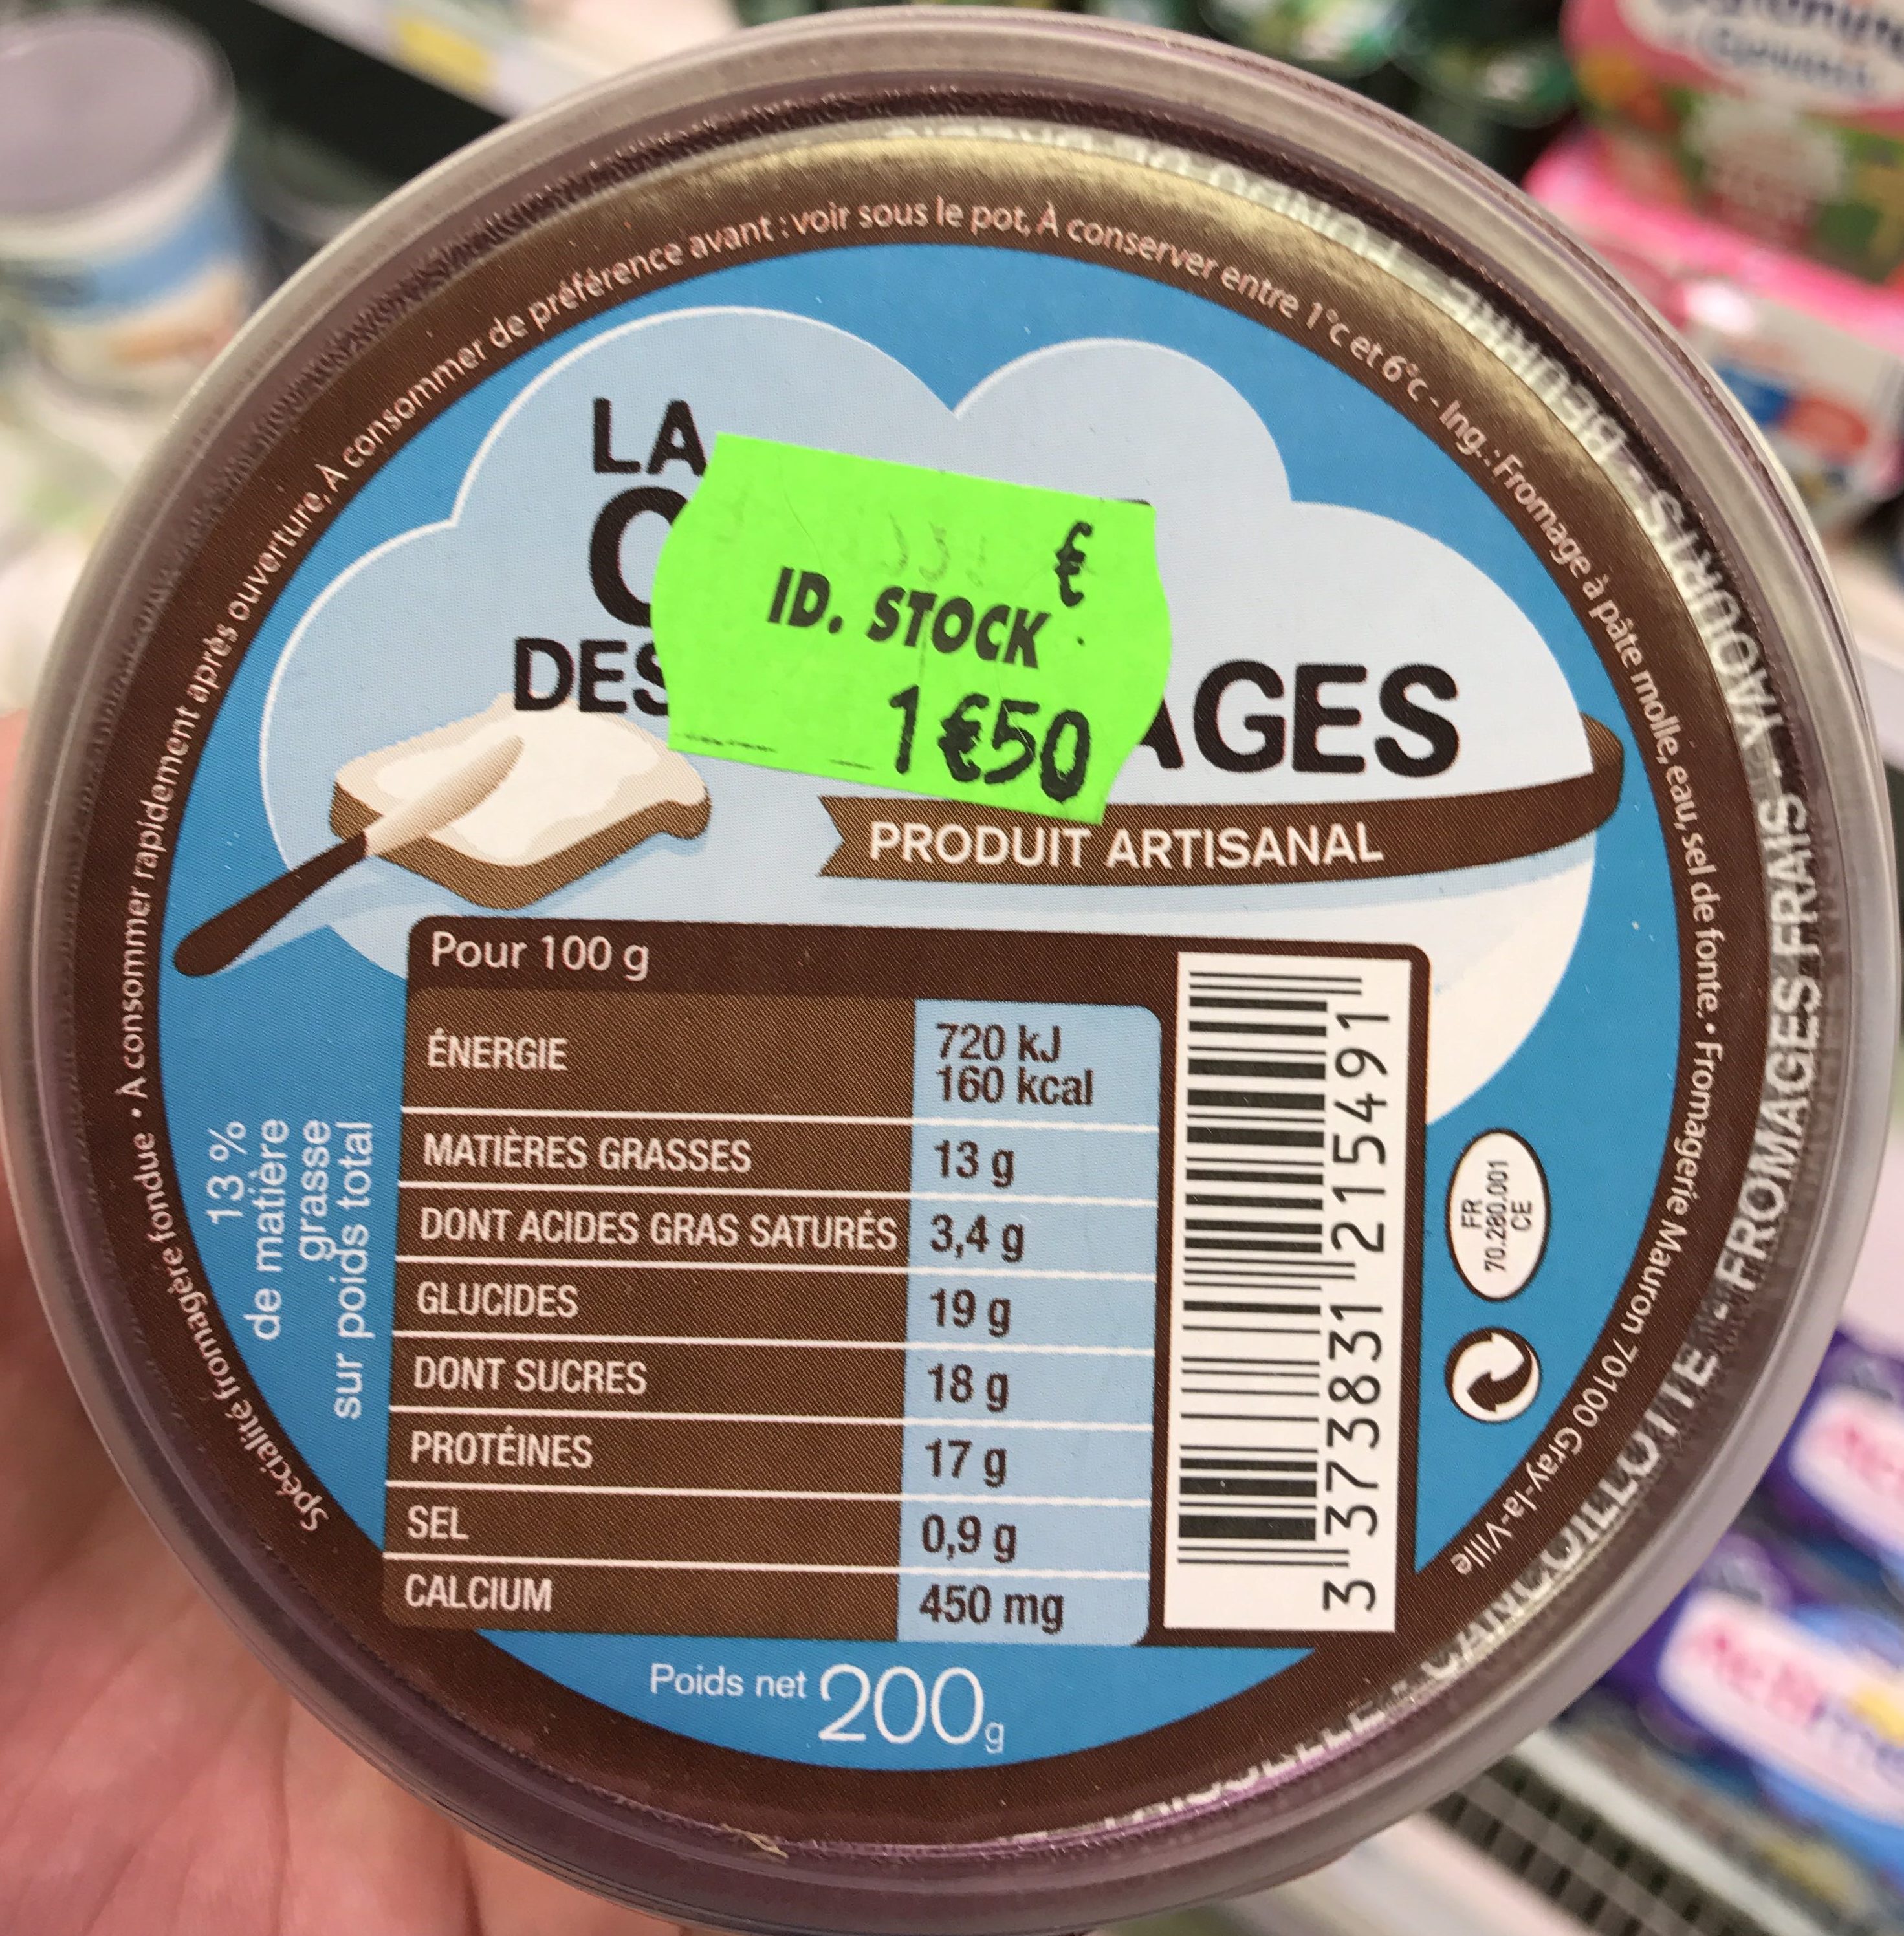 La crème des fromages - Product - fr